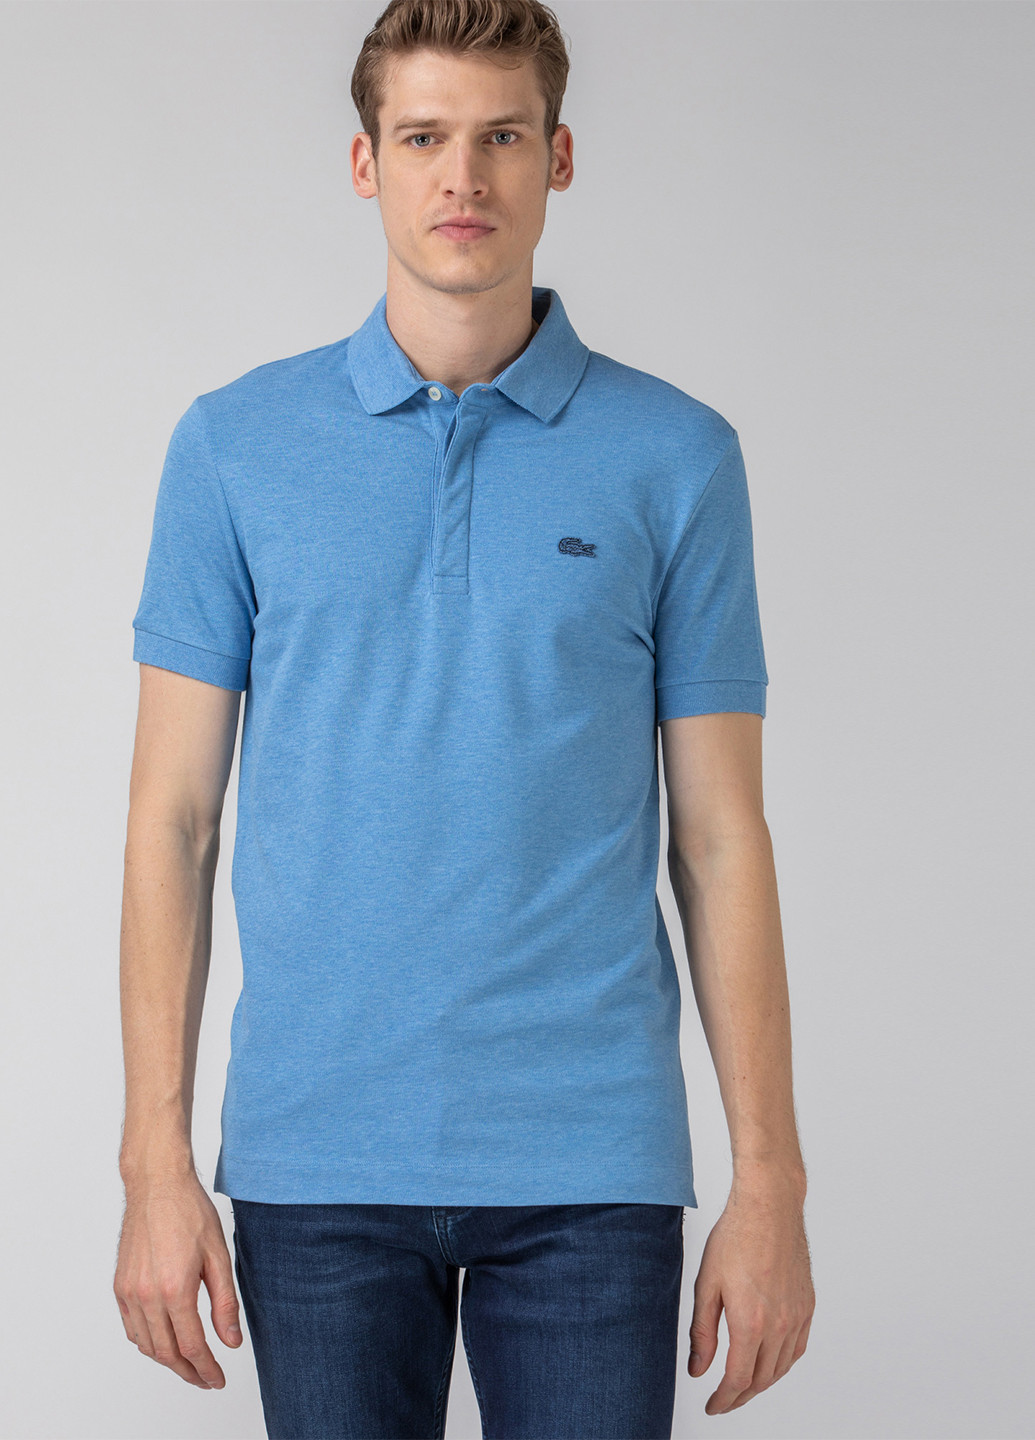 Темно-голубой футболка-поло для мужчин Lacoste однотонная